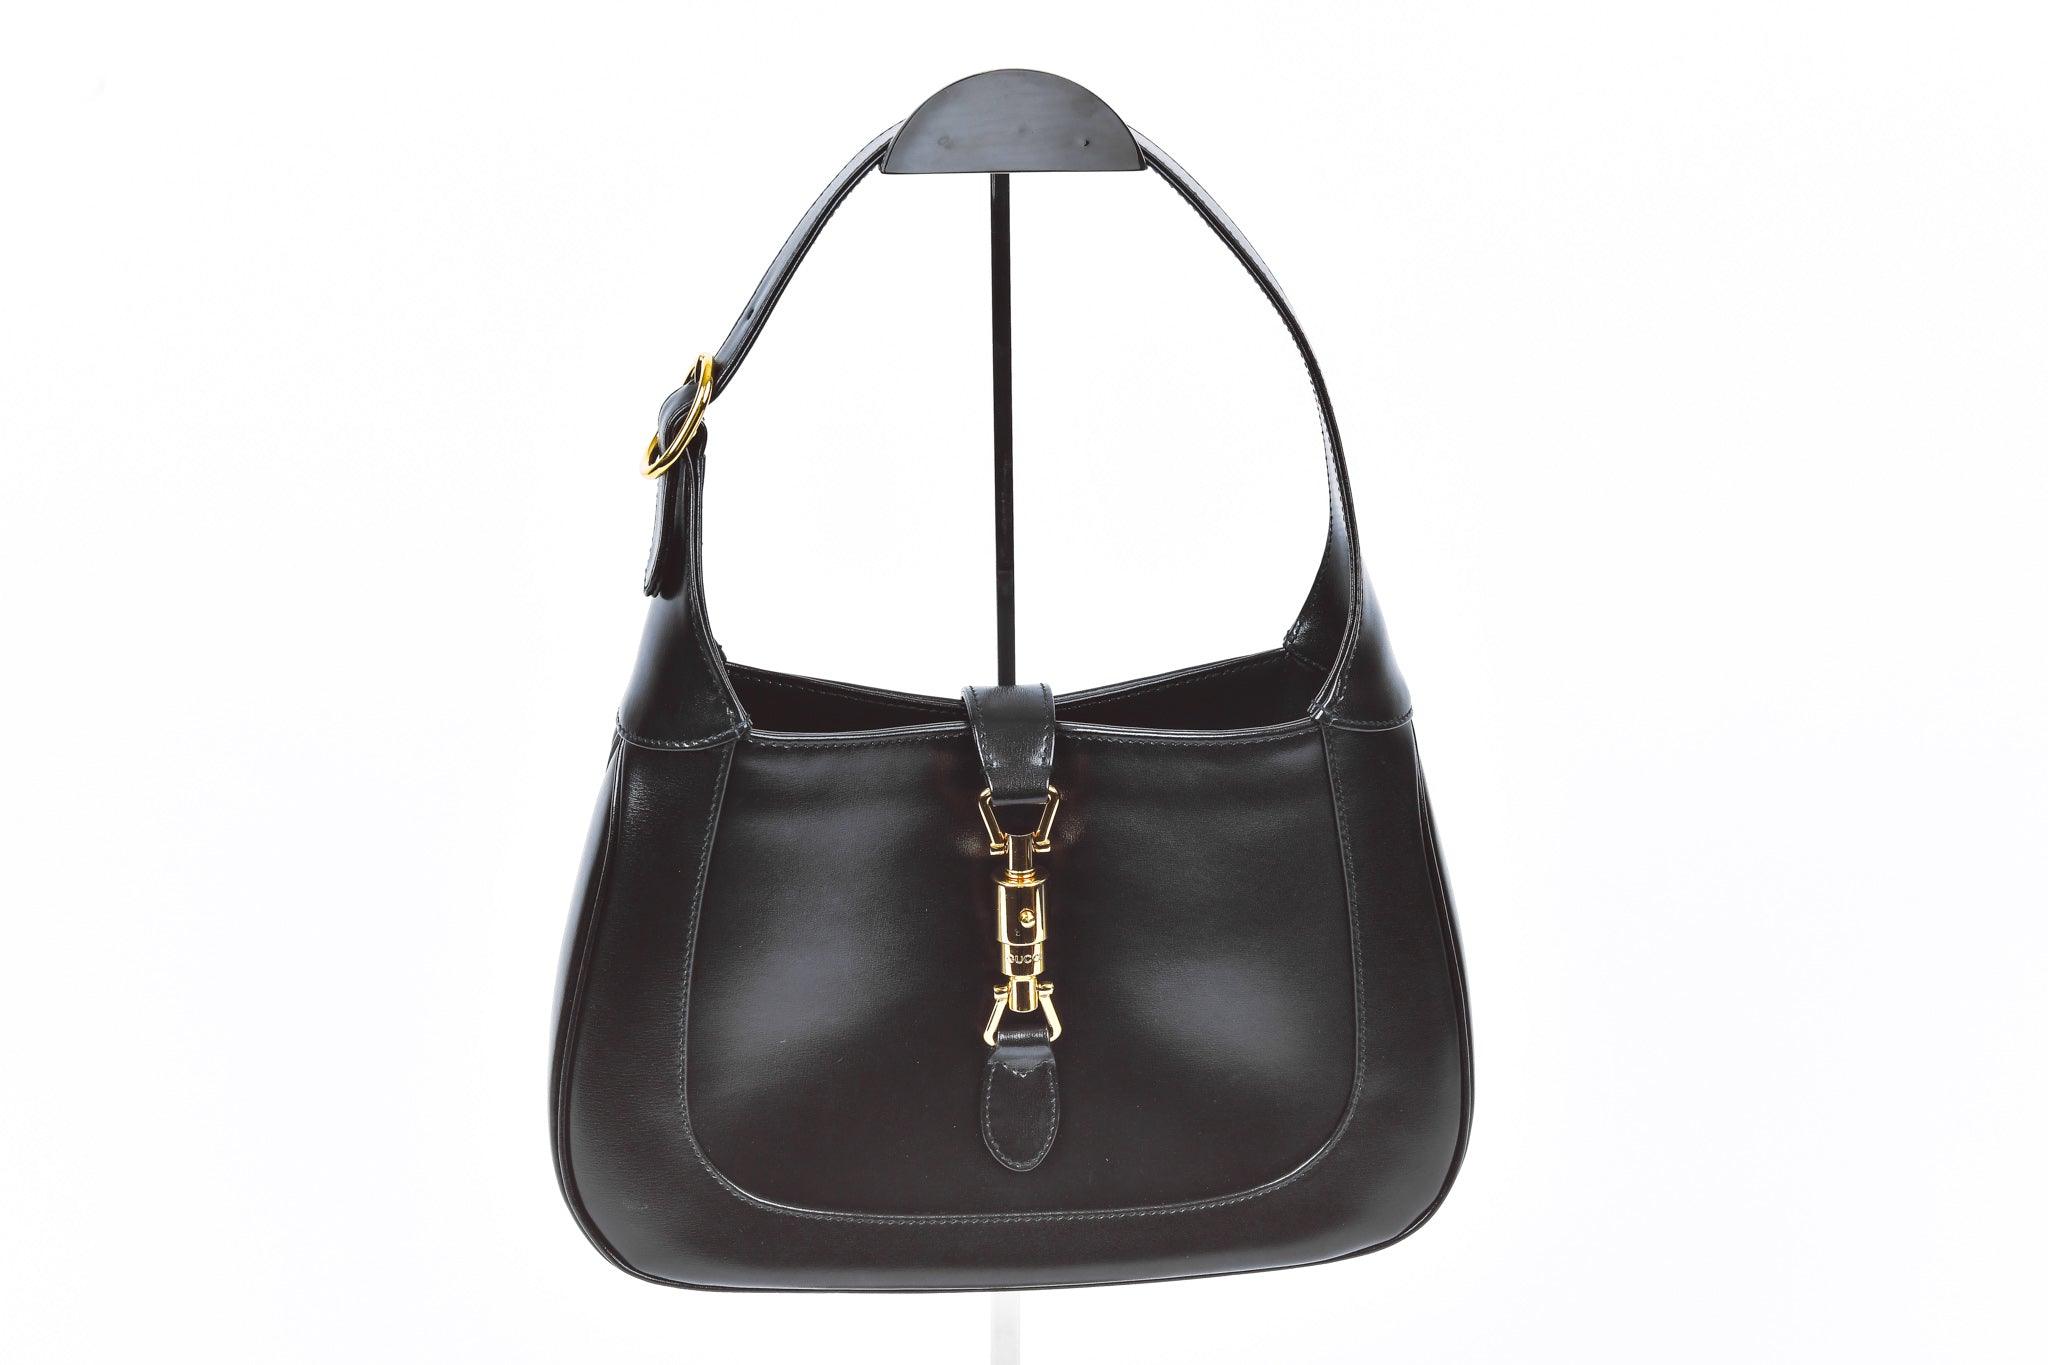 Jackie 1961 Bag in Black - Gucci